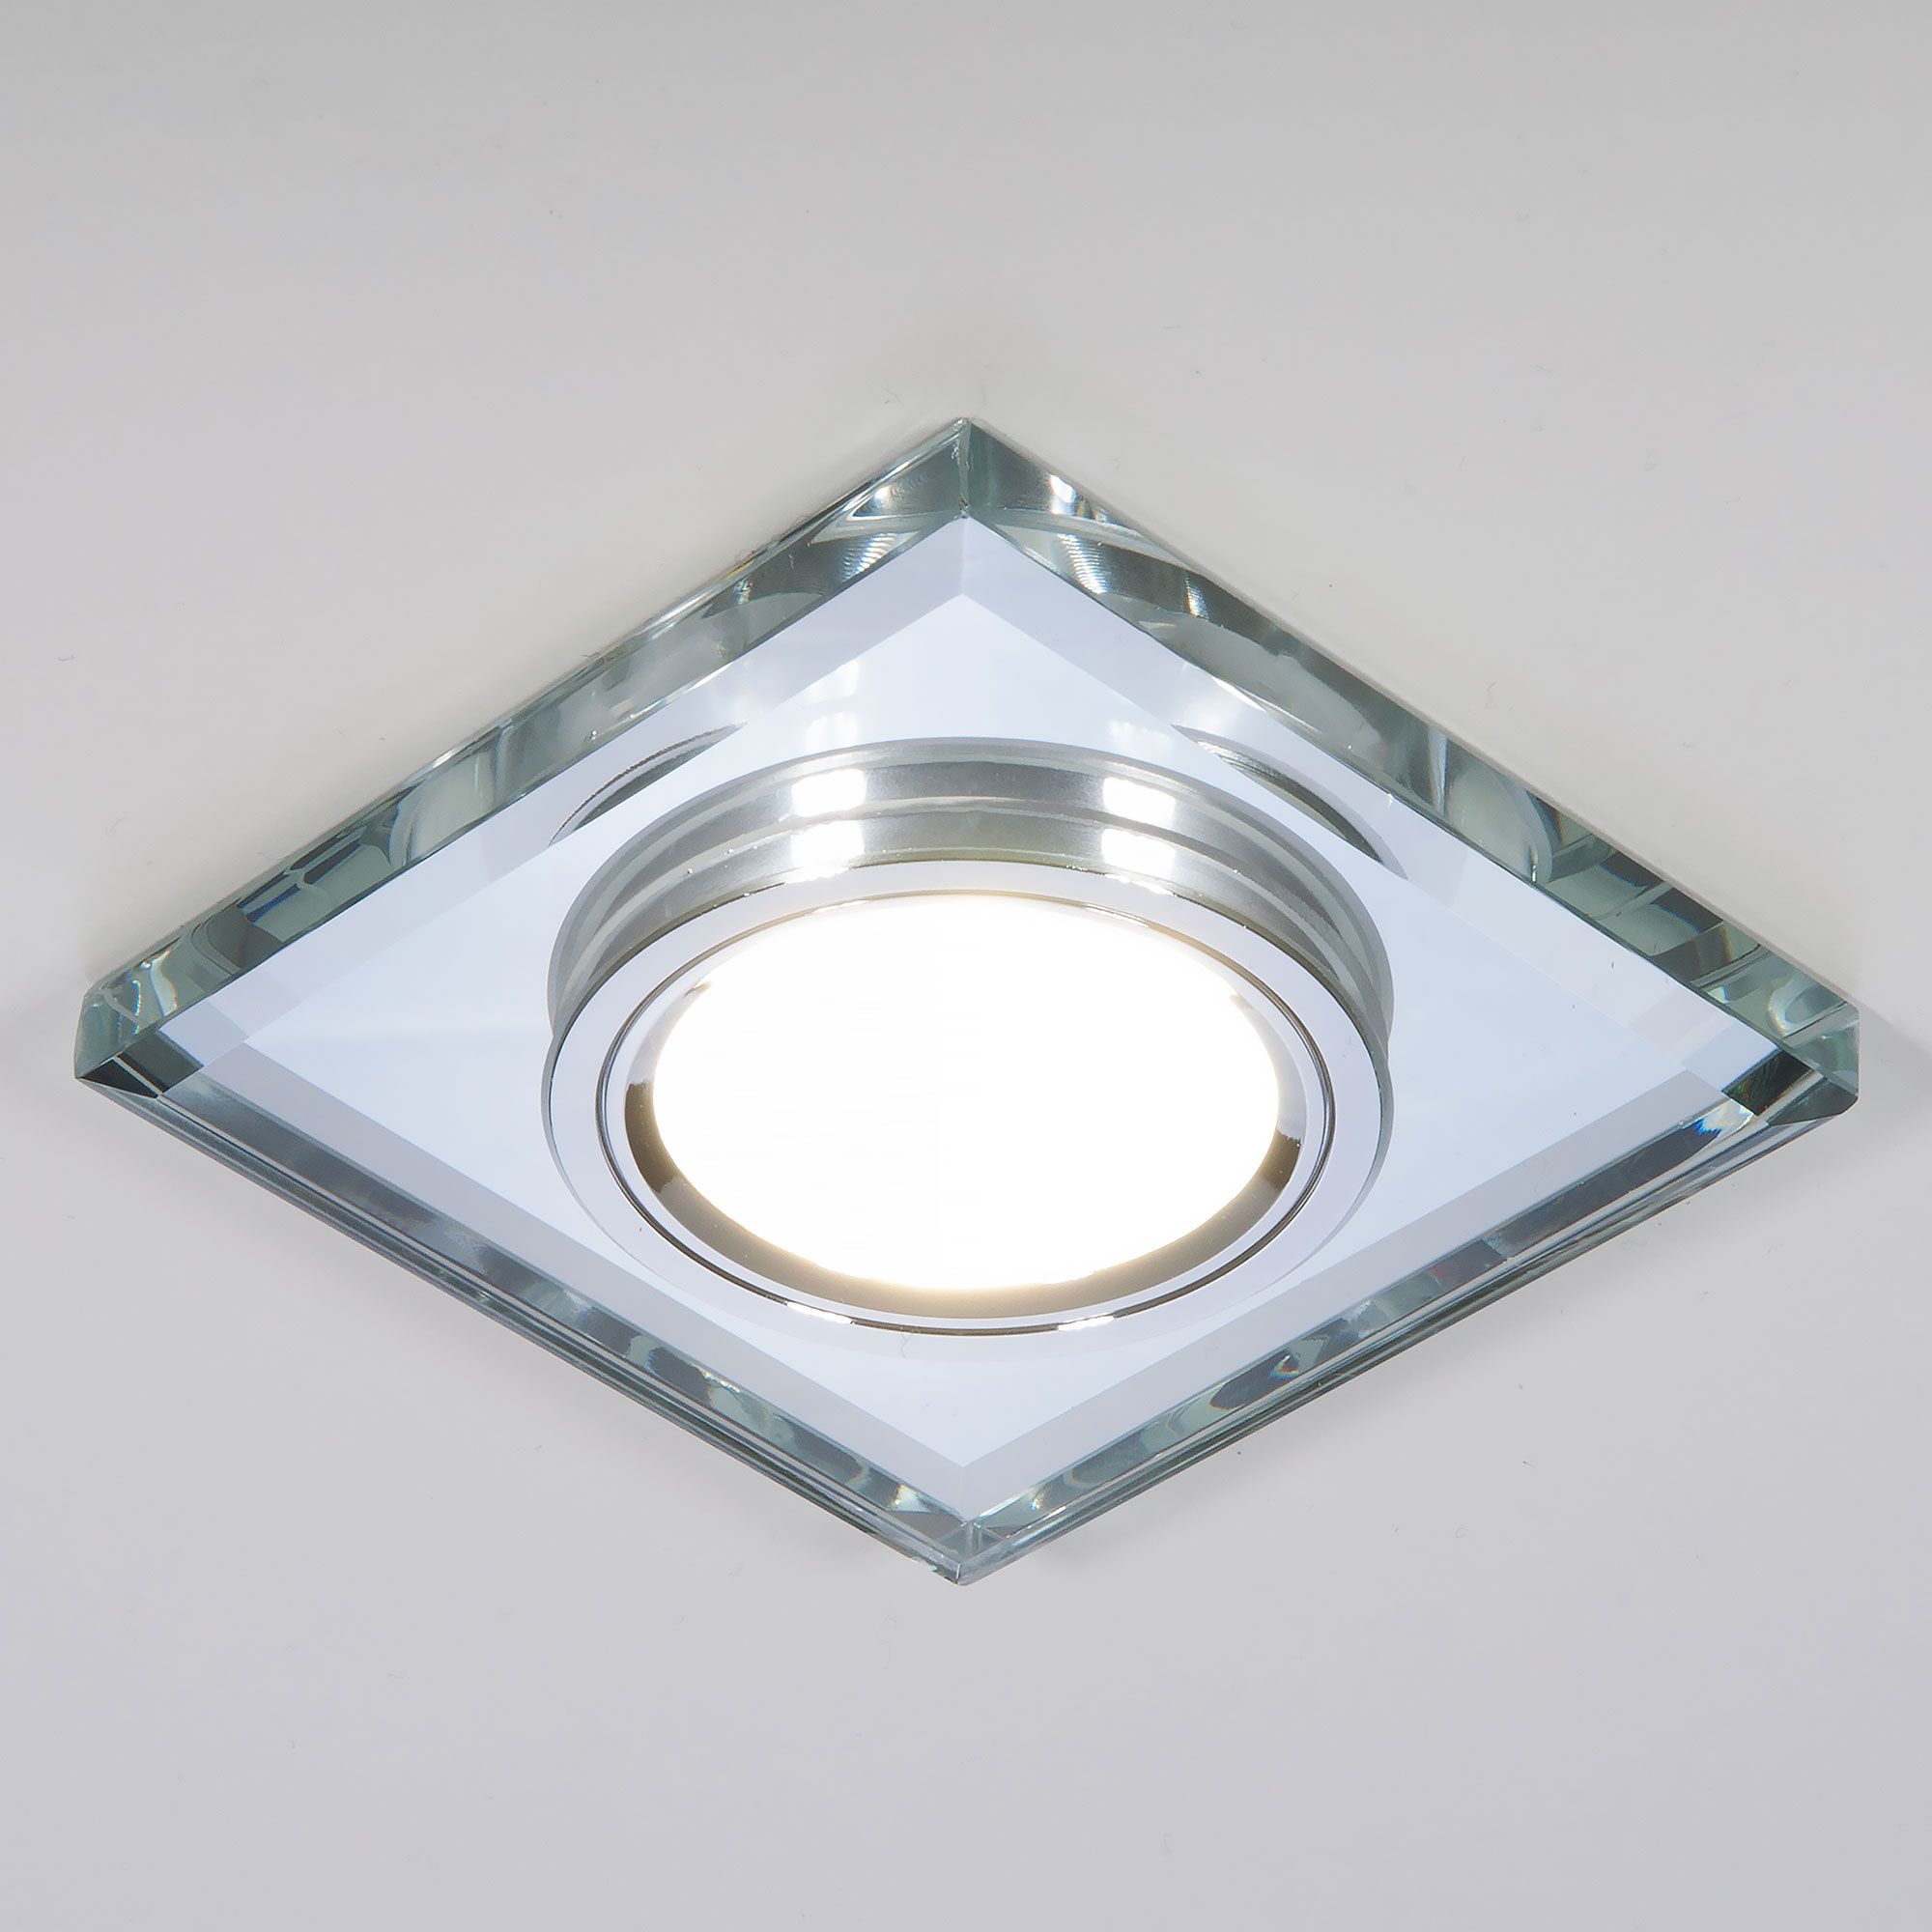 Встраиваемый точечный светильник со светодиодной подсветкой 2229 MR16 SL зеркальный/серебро